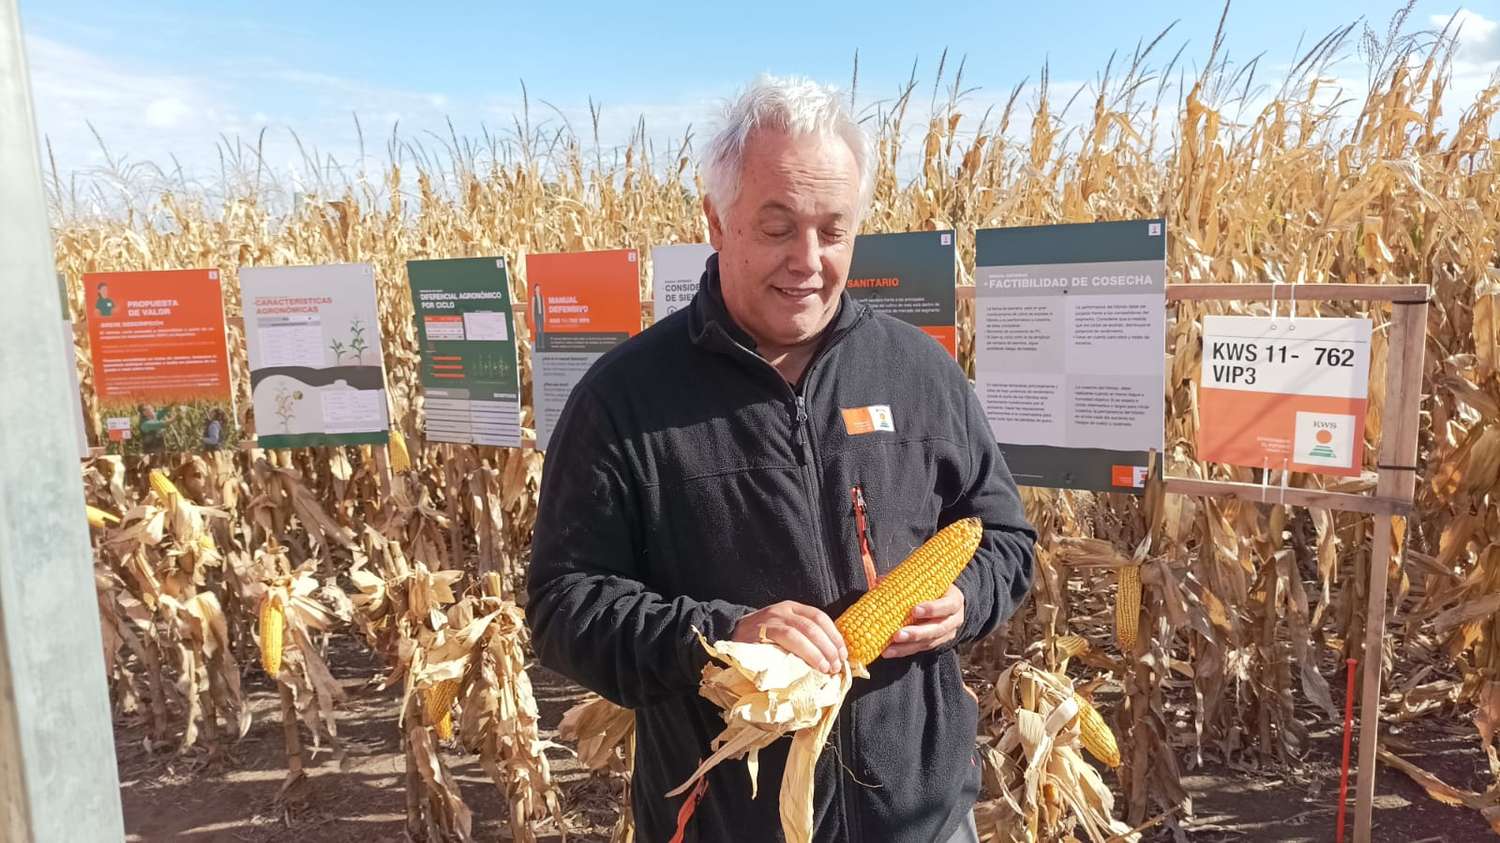 Ingeniero agrónomo Julio Cerono, breeder del semillero KWS